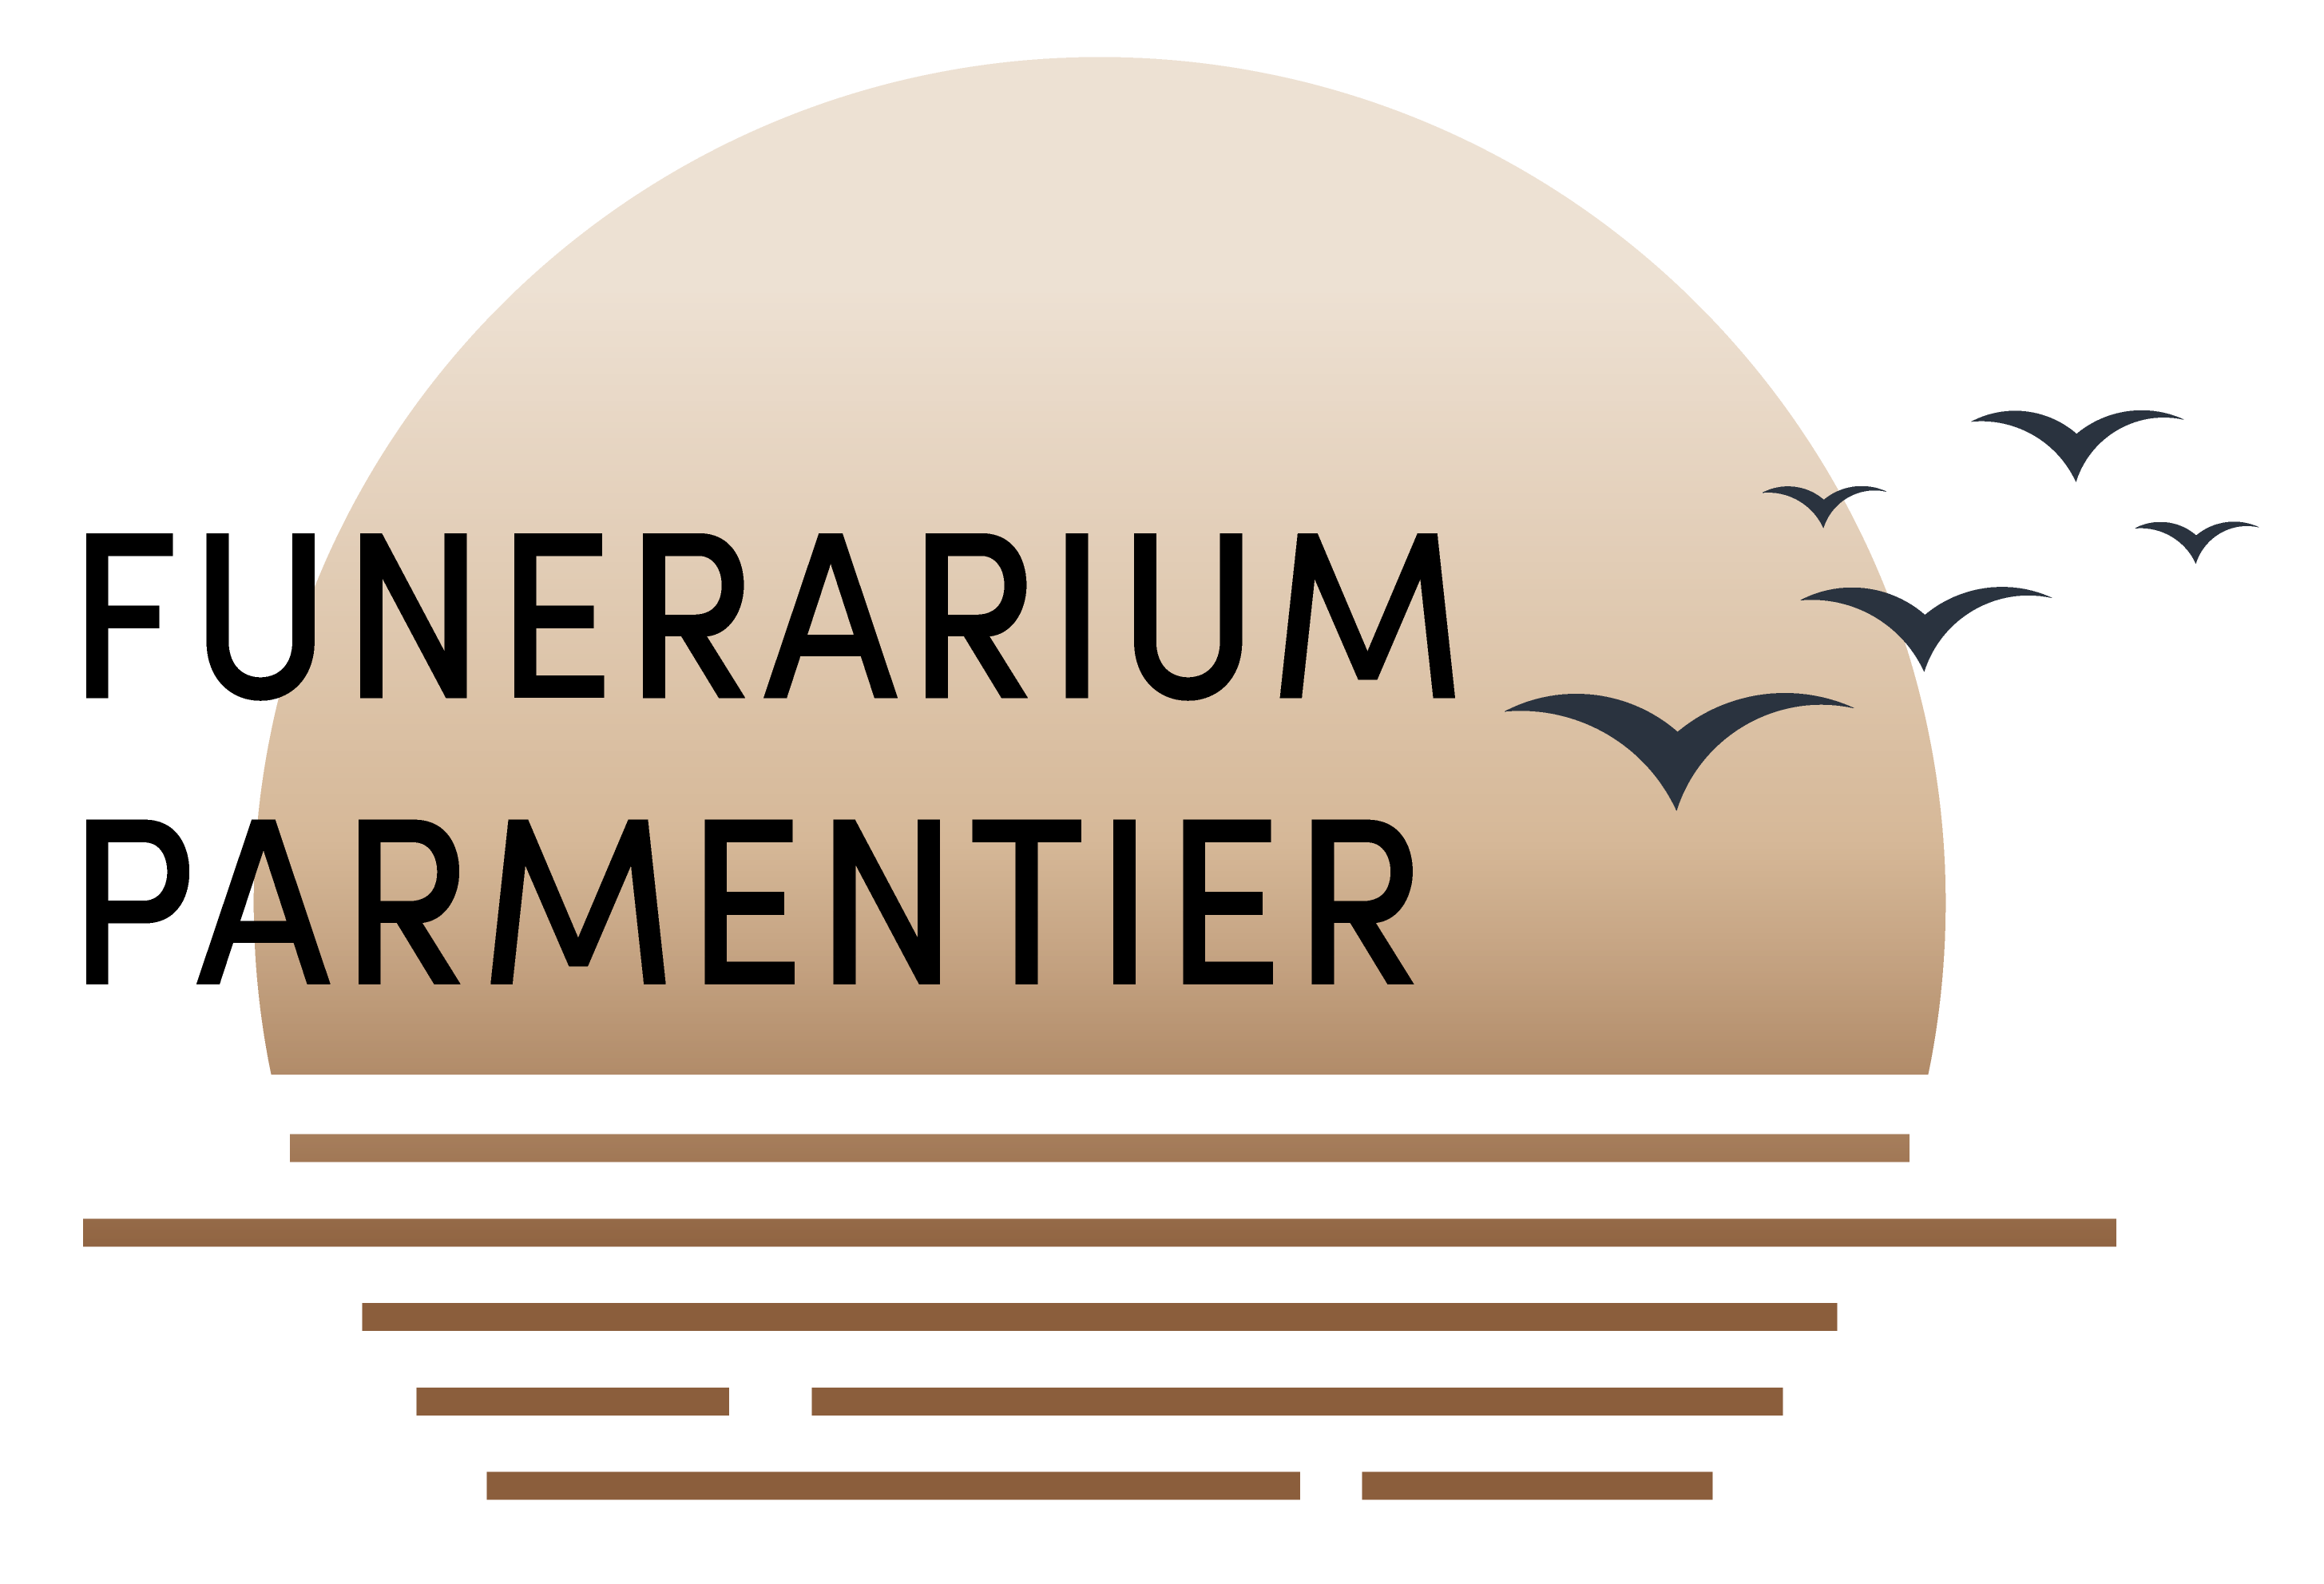 Funerarium Parmentier